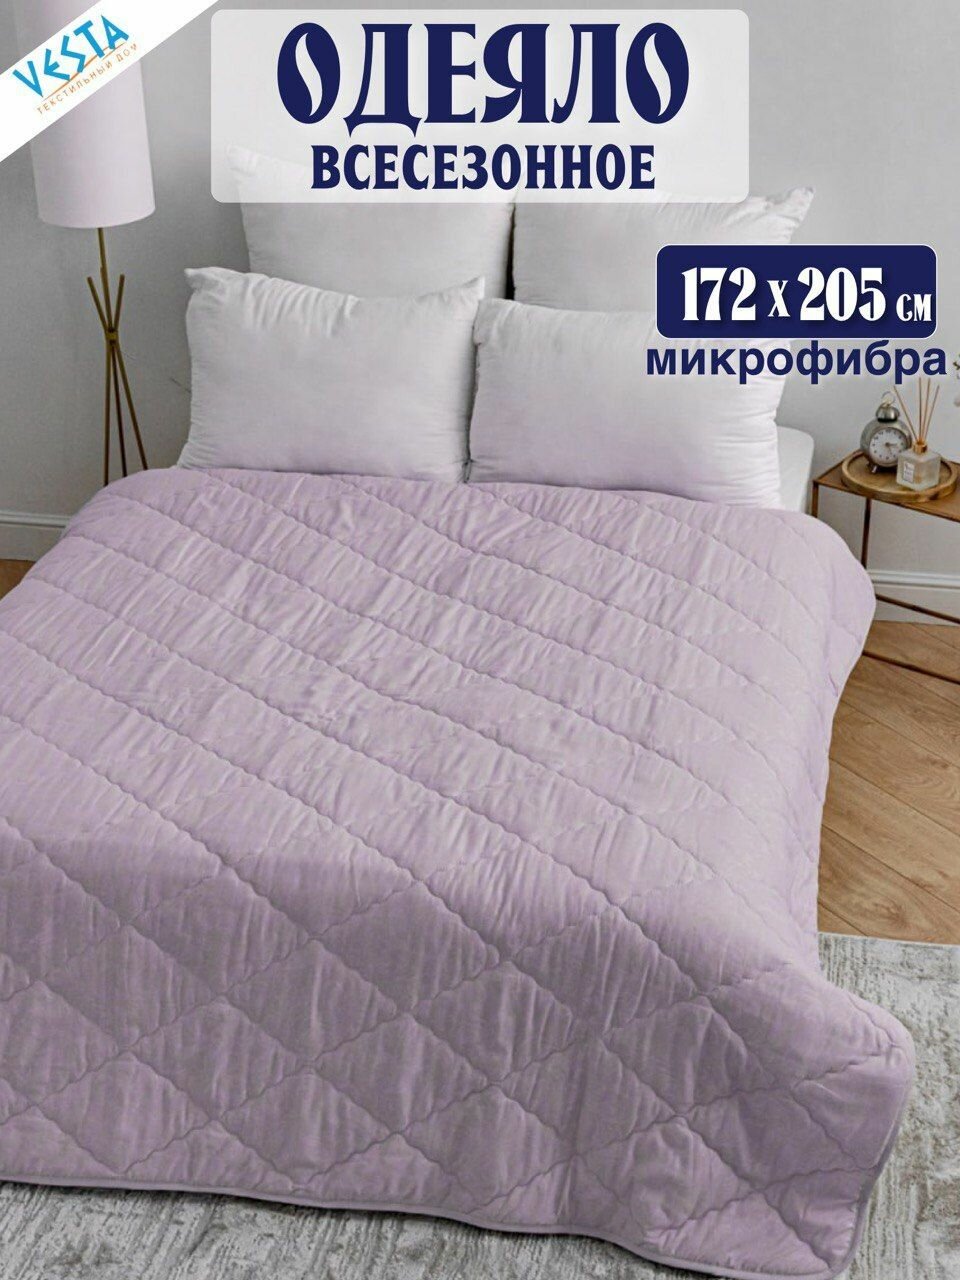 Одеяло Vesta всесезонное лавандовое 2-спальное с наполнителем микрофибра, одеяло двуспальное 172х205 см